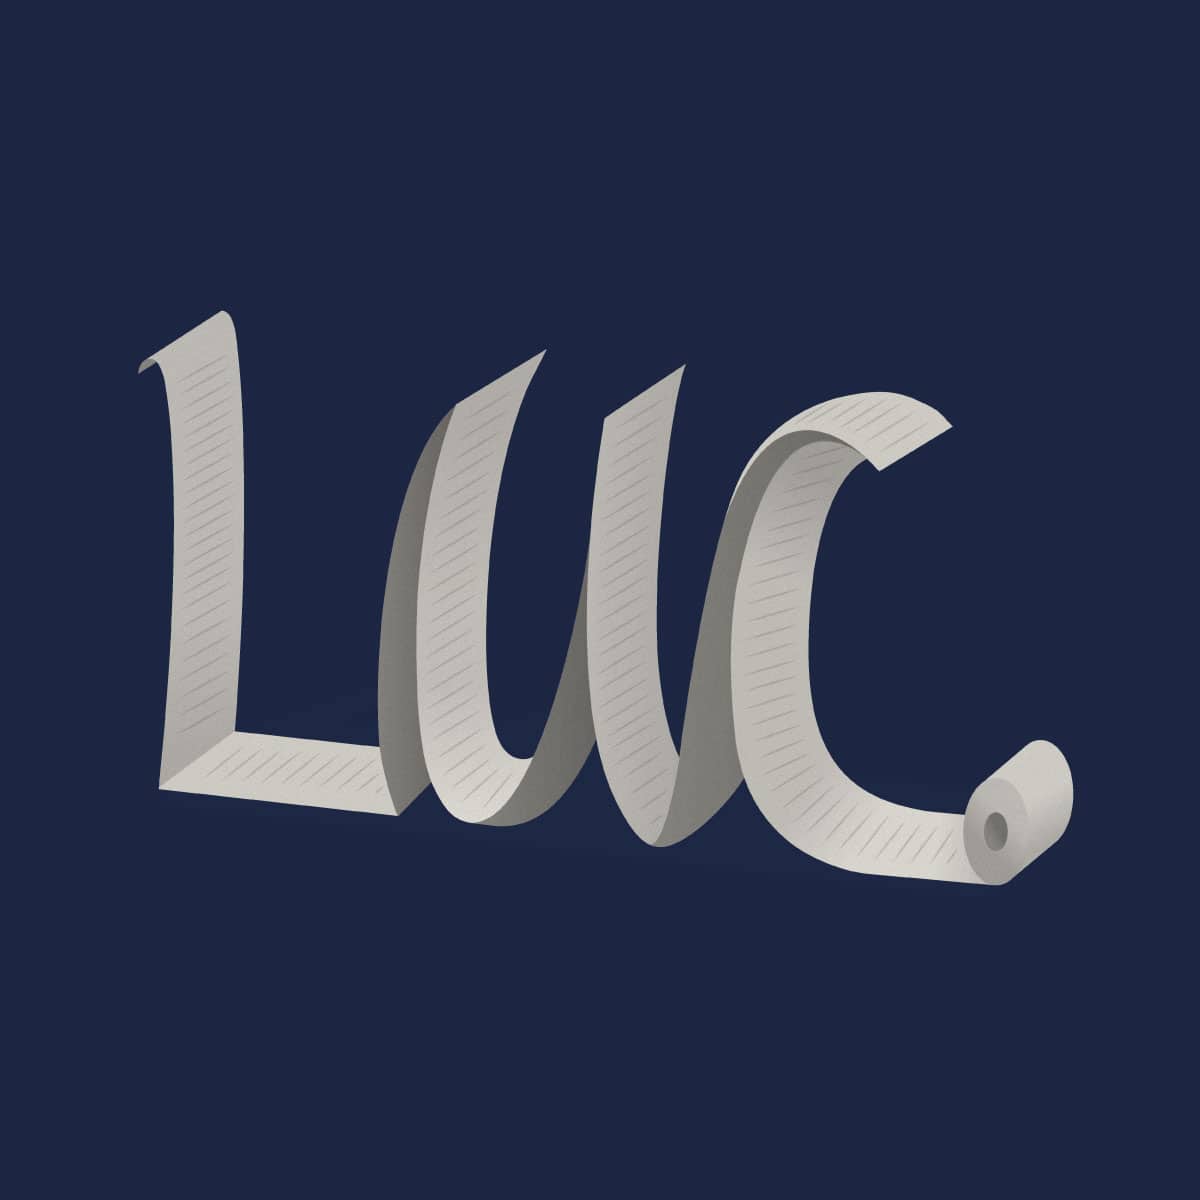 En fondo azul, una hoja blanca con renglones forma las letras LUC y se termina en un rollo de papel higiénico